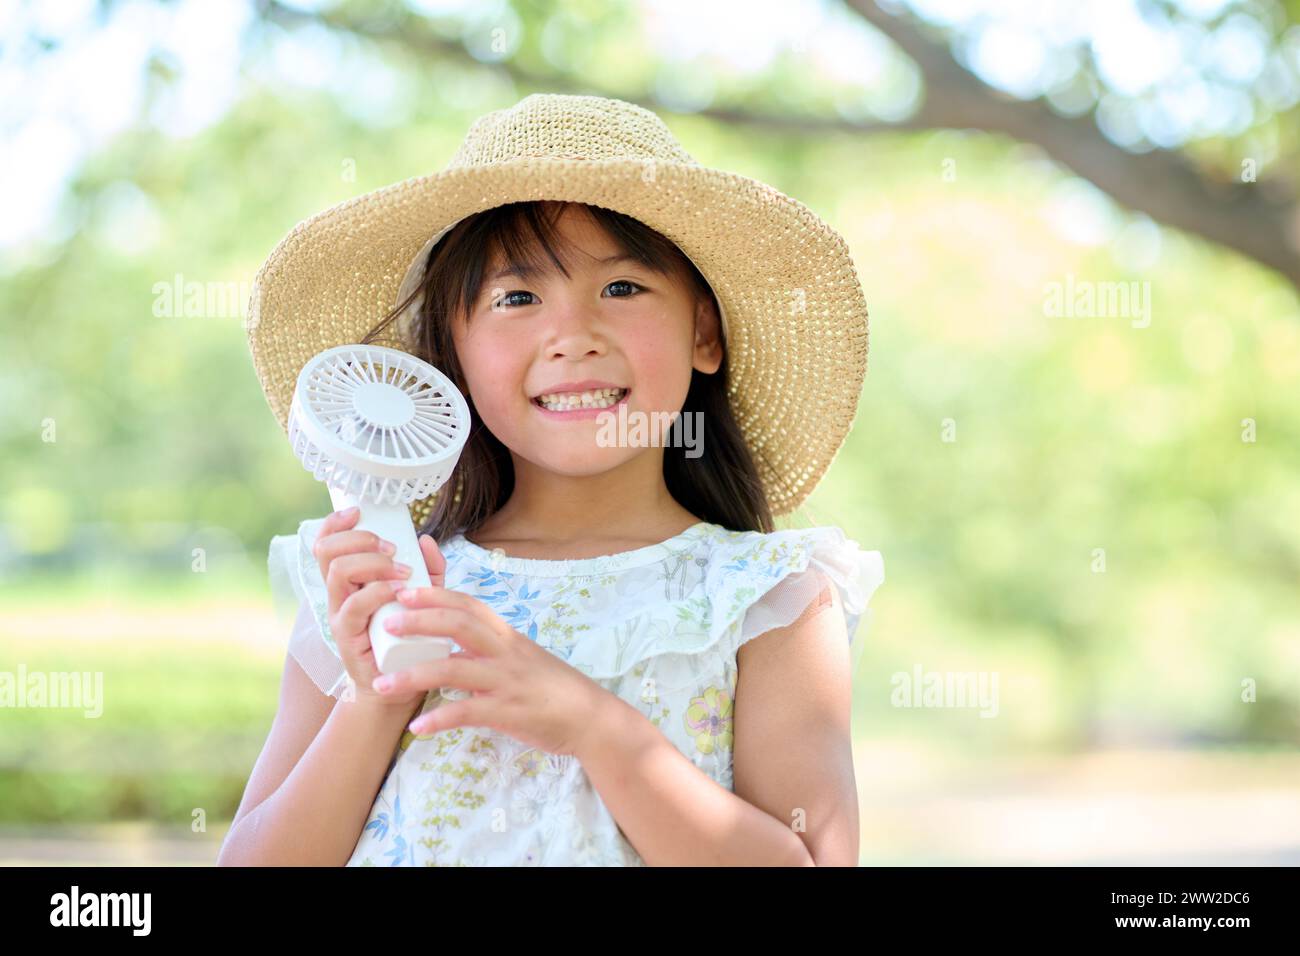 Una niña pequeña en un sombrero sosteniendo un ventilador Foto de stock